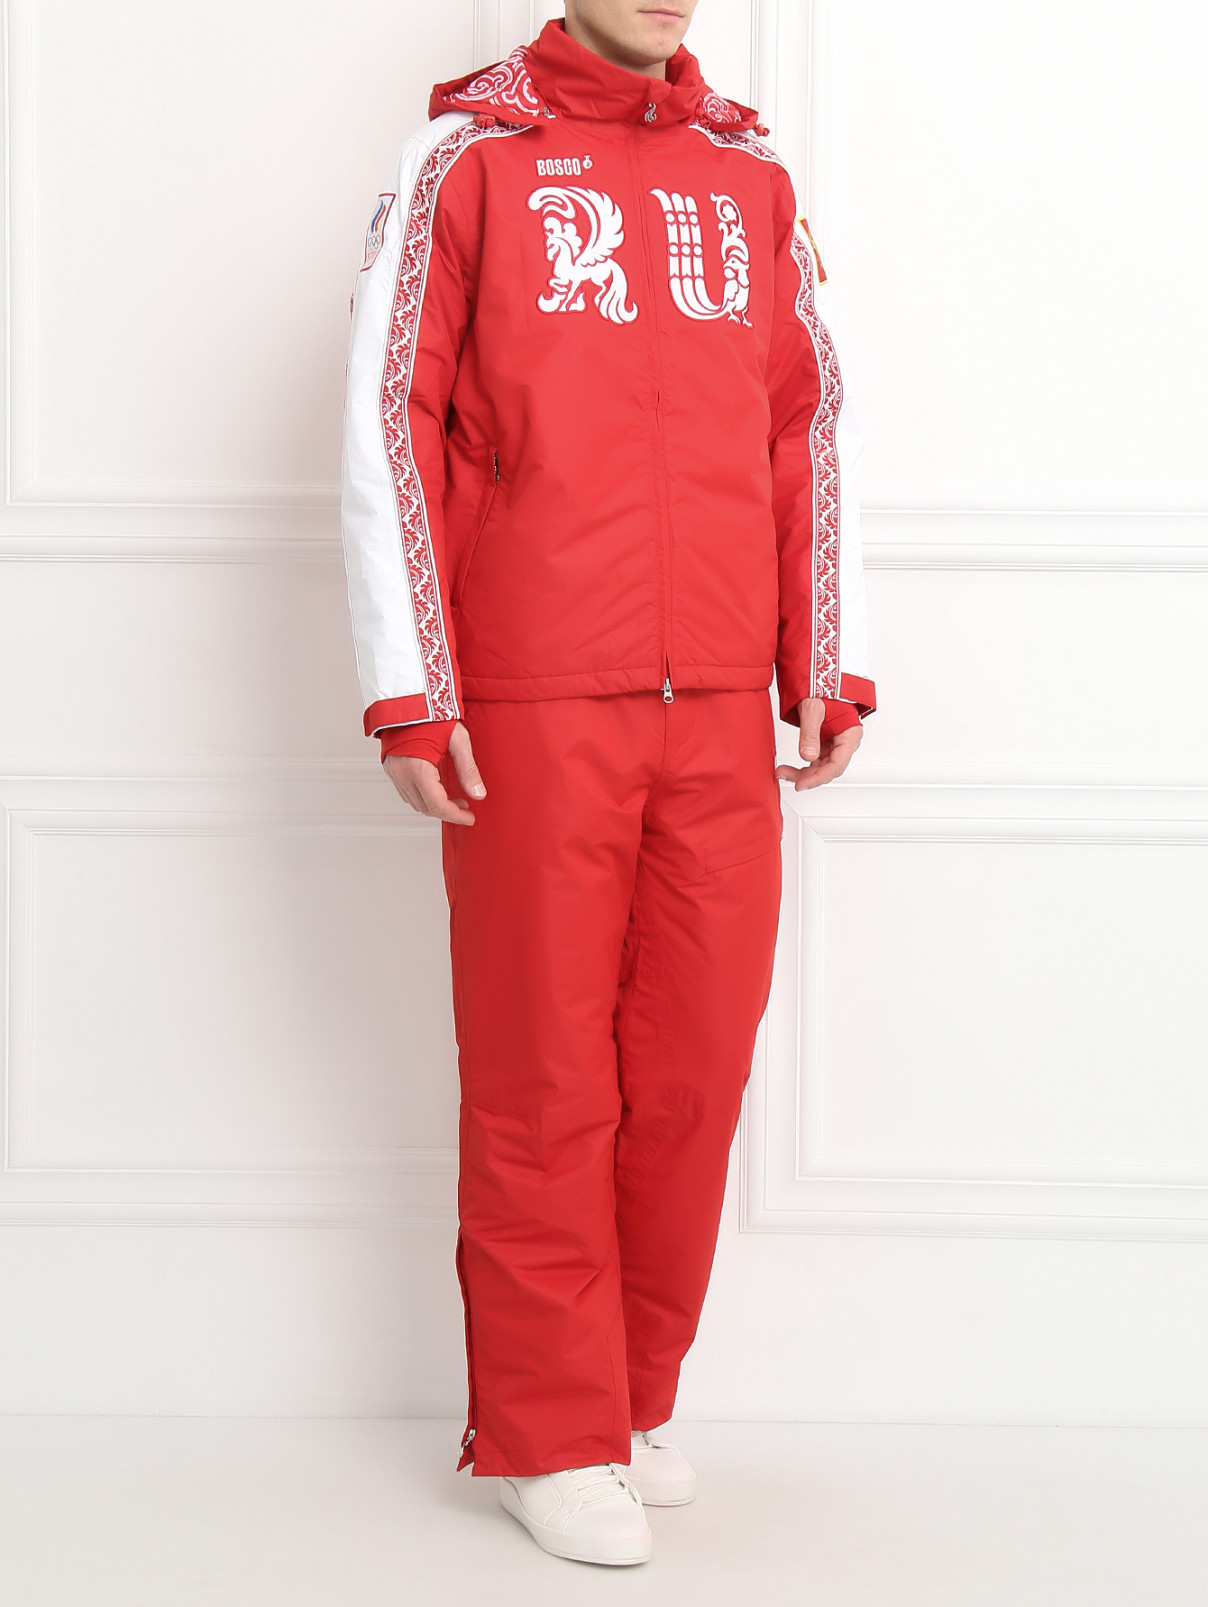 Куртка горнолыжная с аппликацией BOSCO  –  Модель Общий вид  – Цвет:  Красный